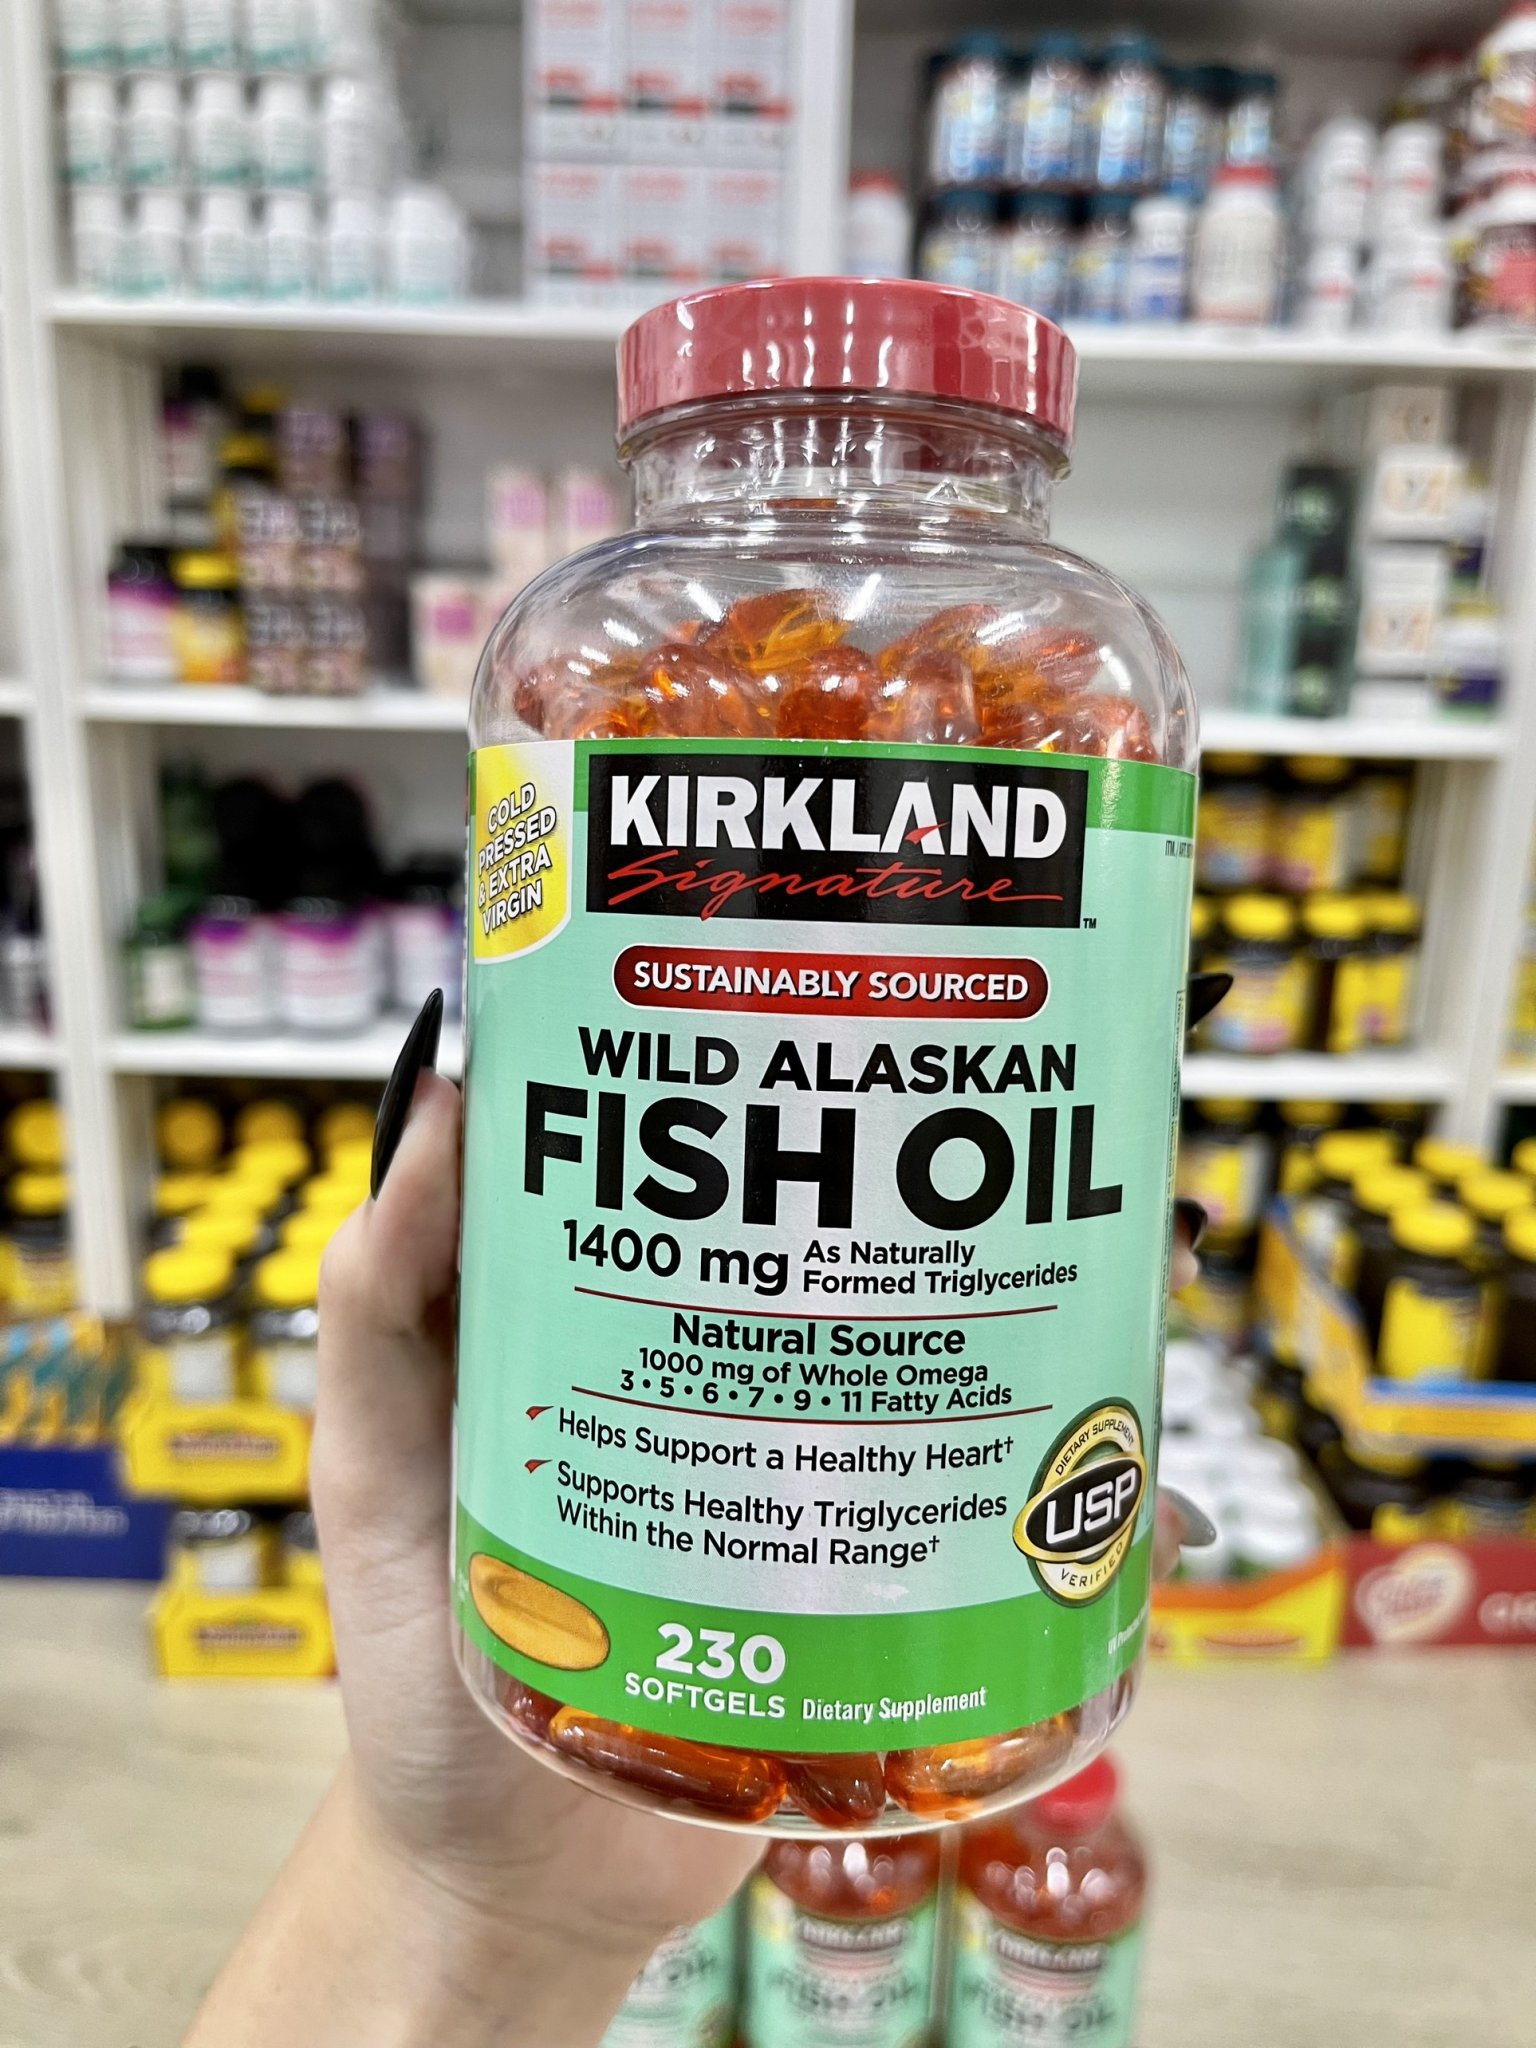 Dầu Cá Kirkland Wild Alaskan Fish Oil 1400mg - Hộp 230 viên của Mỹ